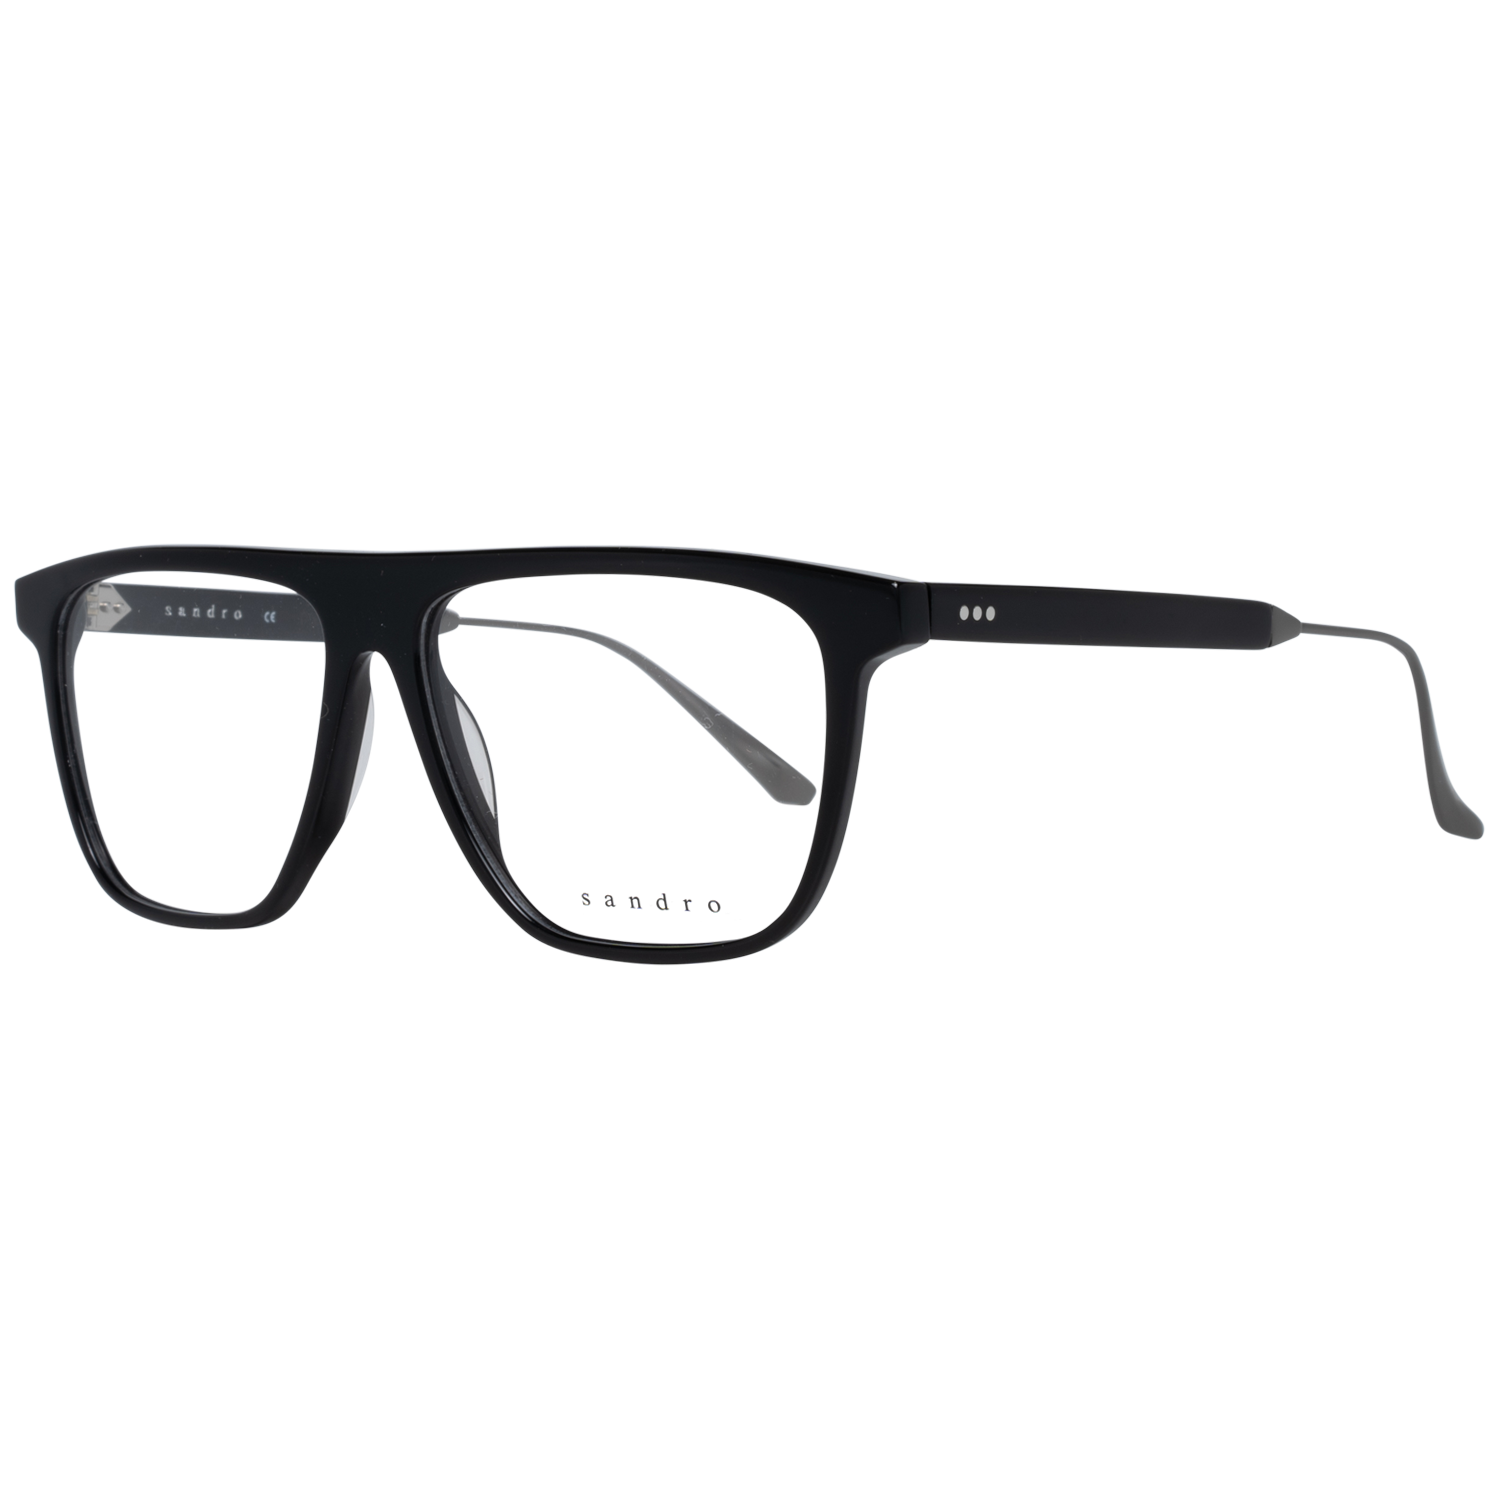 Sandro Frames Sandro Optical Frame SD1018 001 55 Eyeglasses Eyewear UK USA Australia 